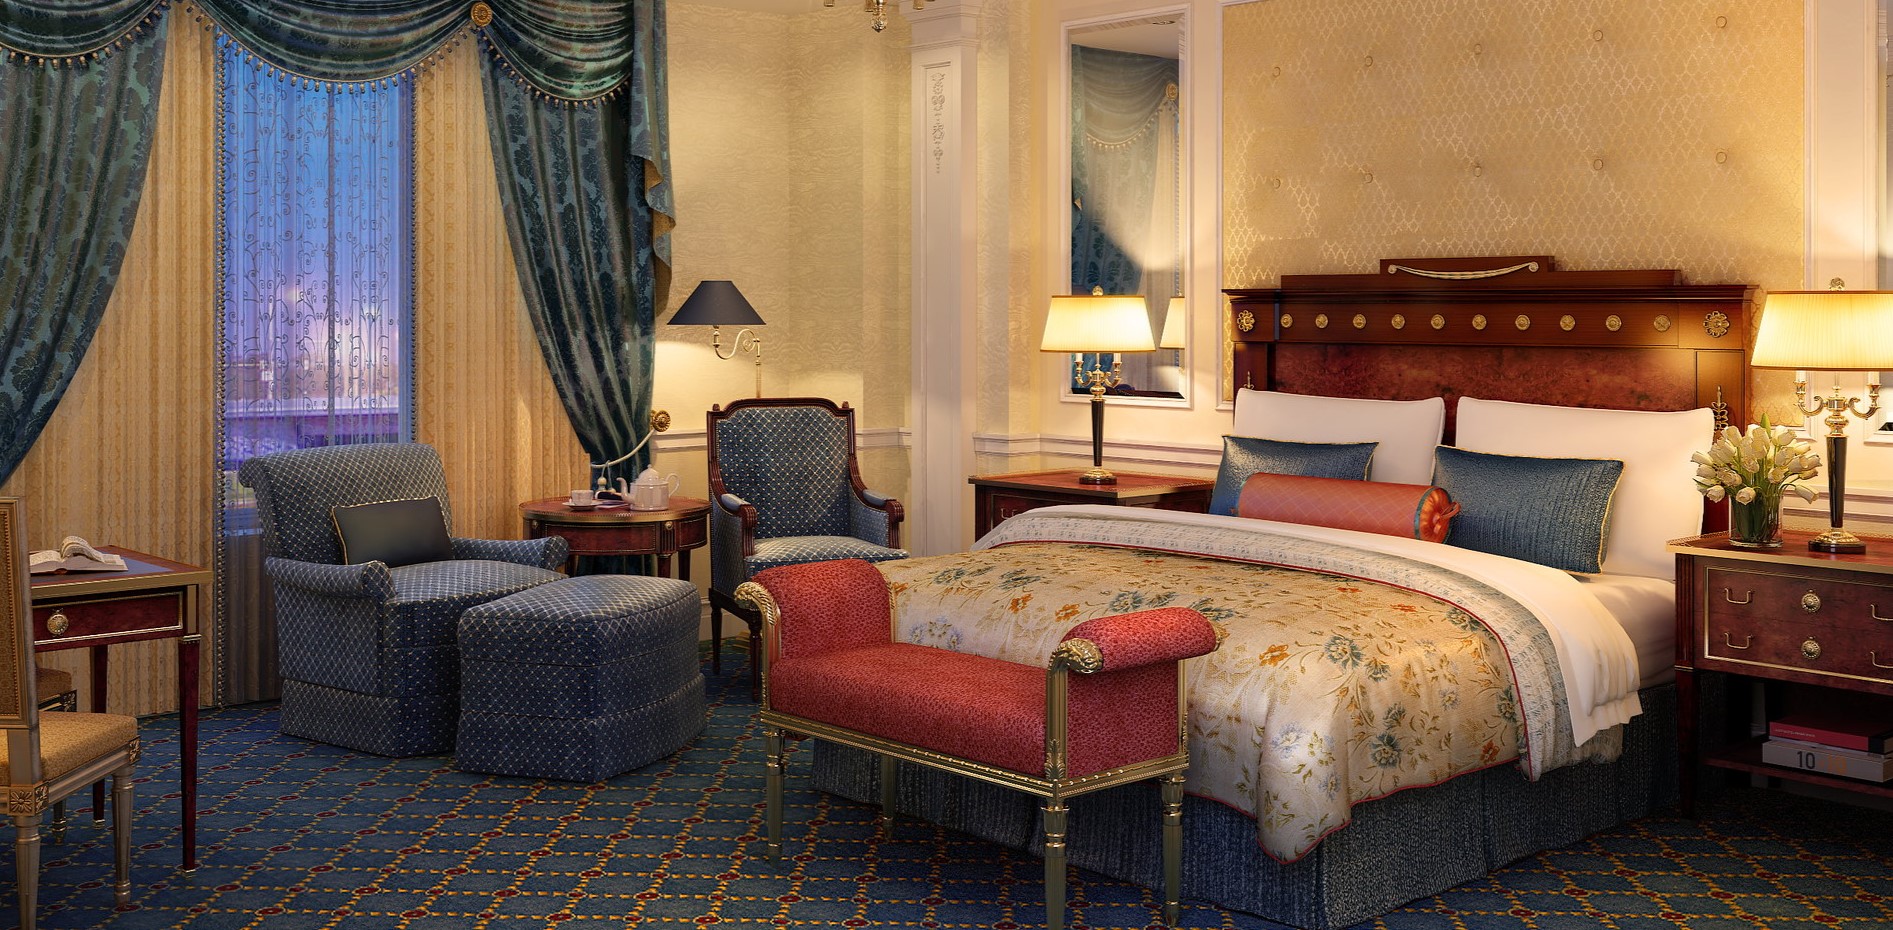 Роскошное оформление интерьера спальни в стиле барокко